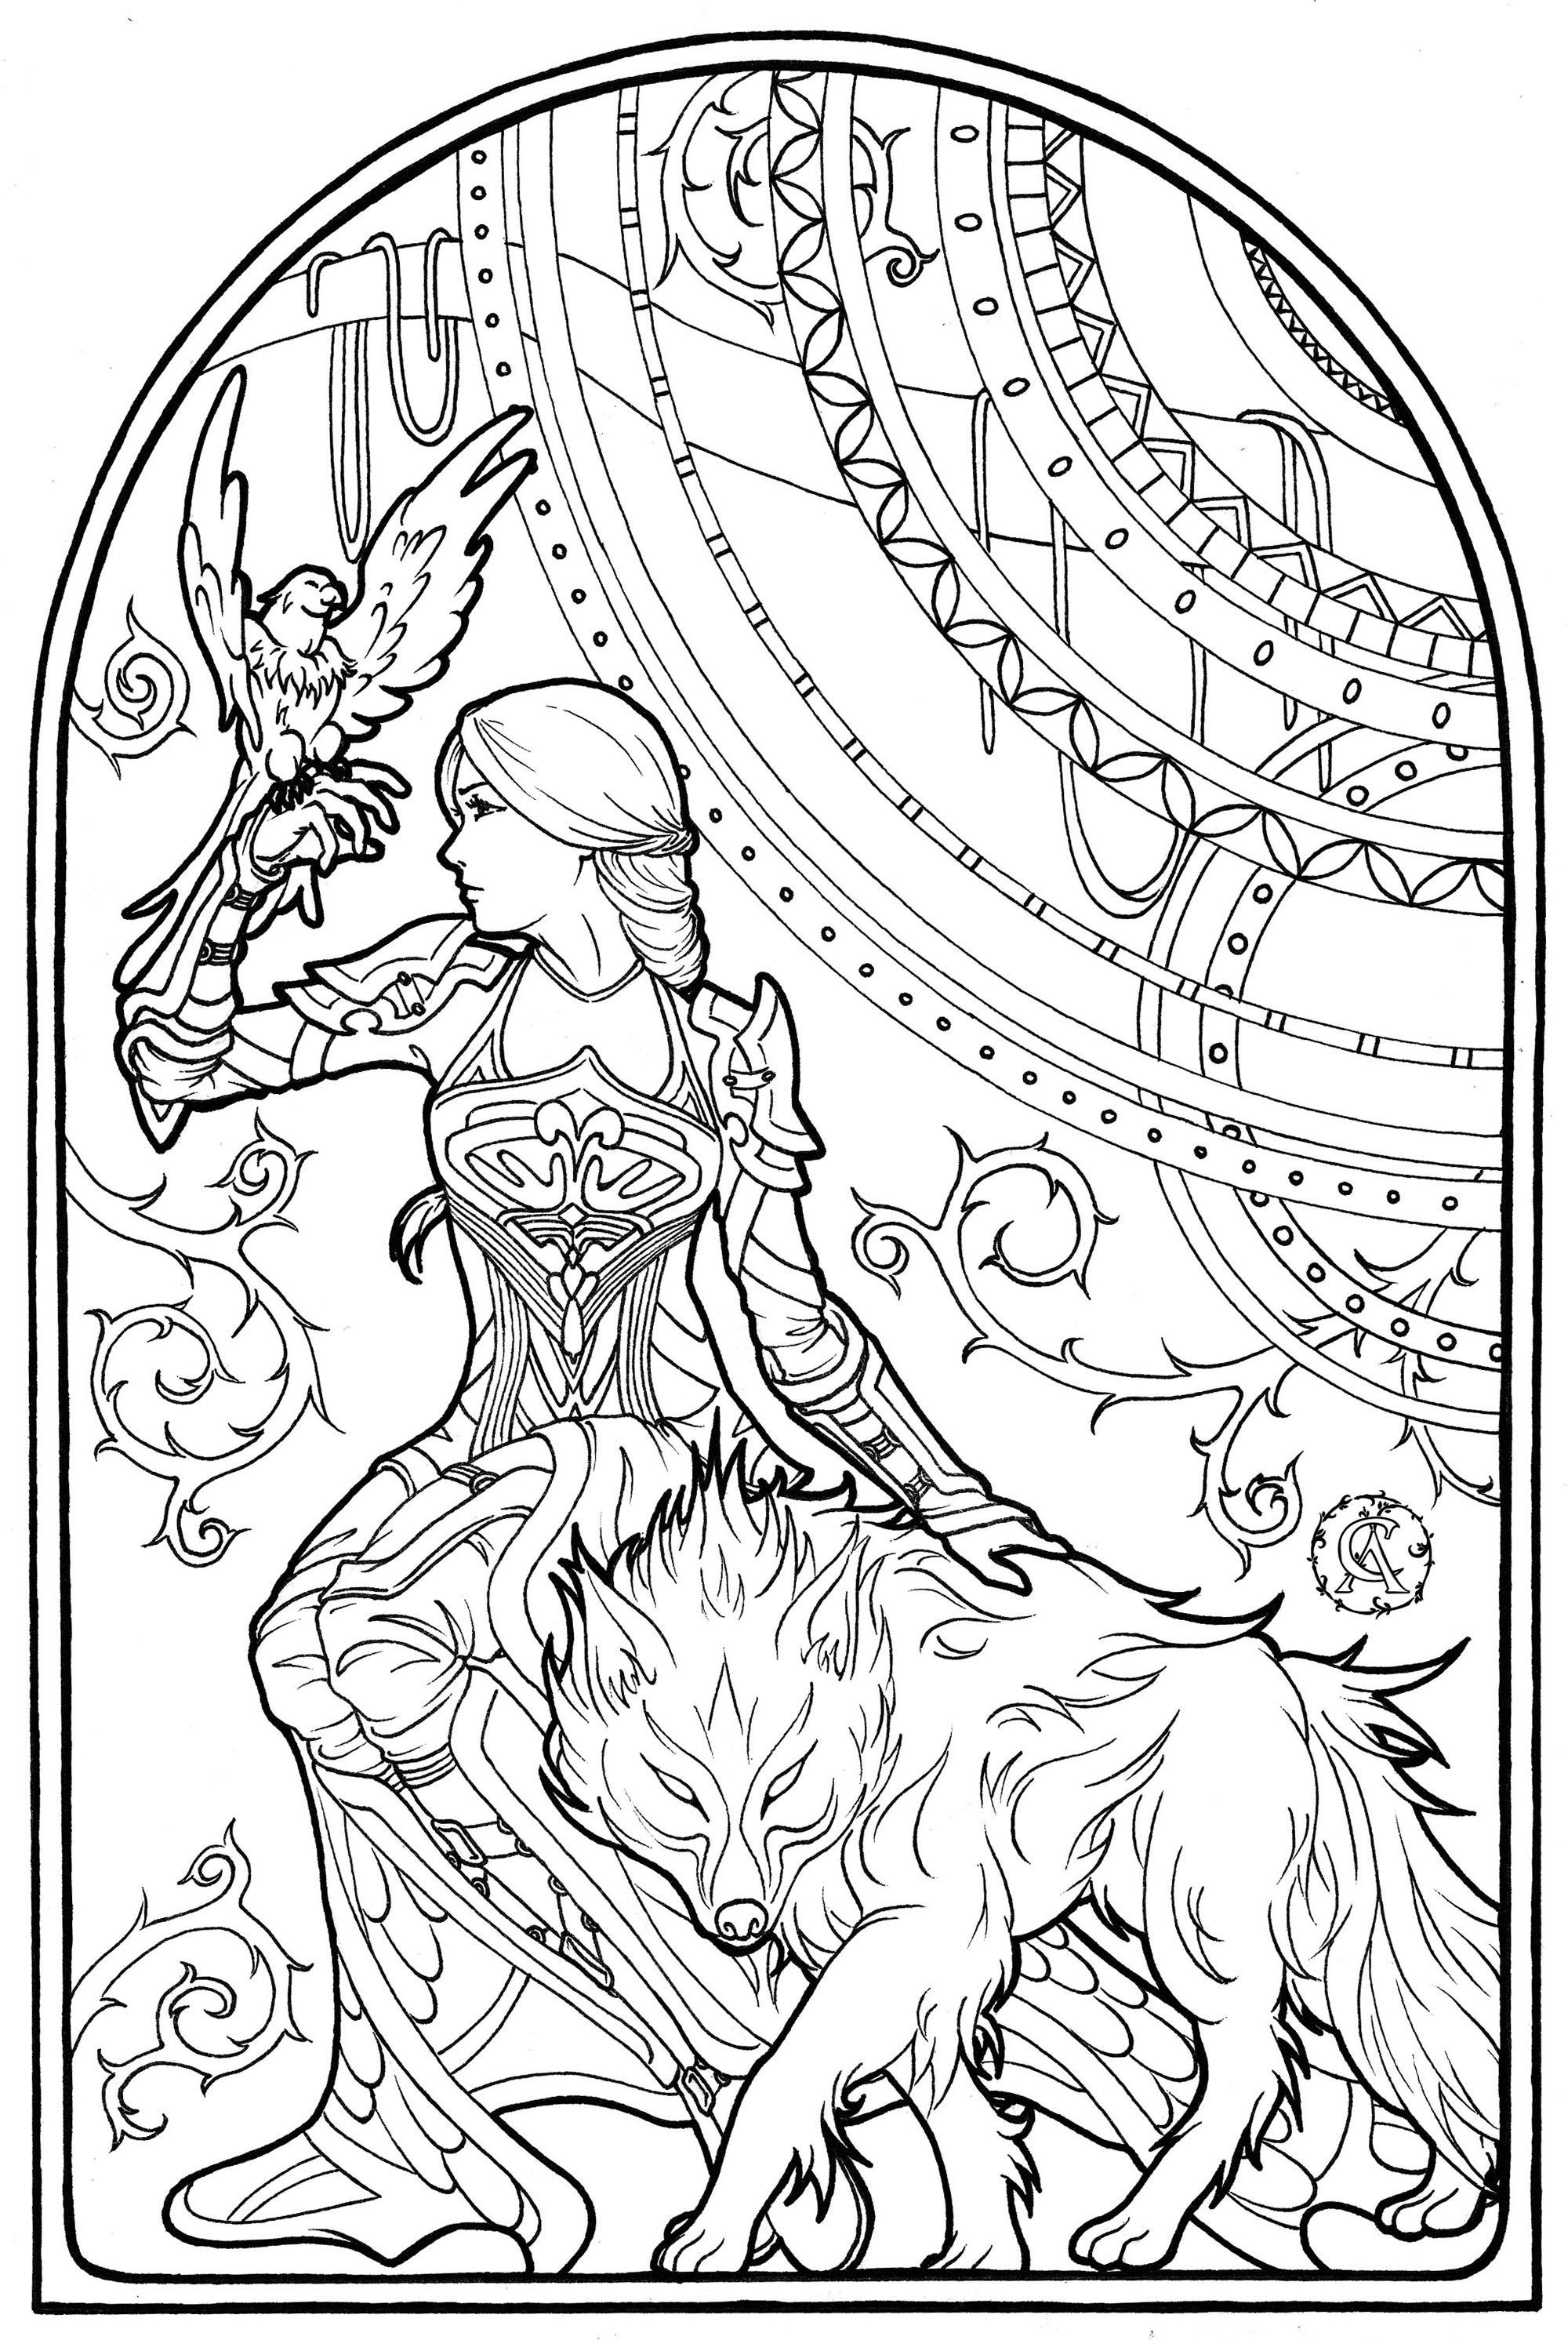 Esta mulher intrépida está na companhia do seu falcão e do seu lobo encantado. Desenhado em estilo Arte Nova, Artista : Asantassi